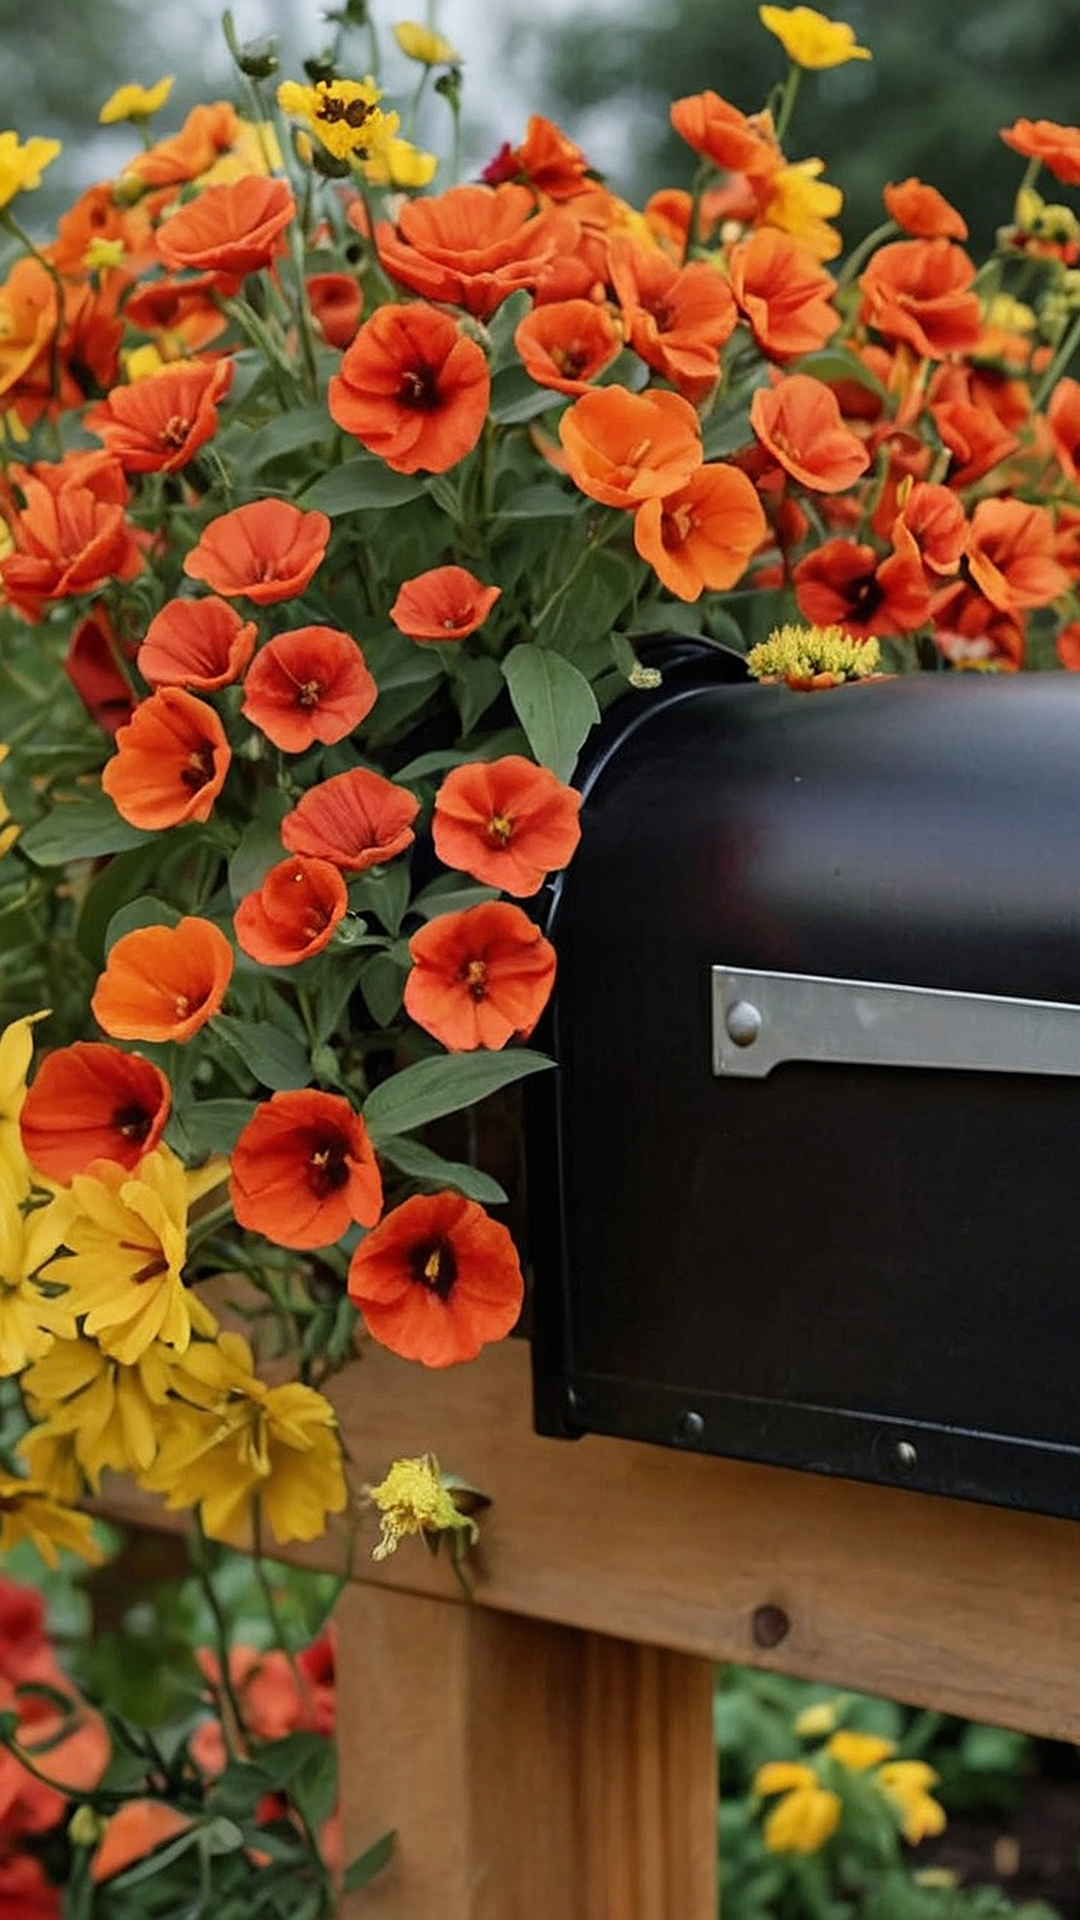 Mailbox Masterpieces: Exquisite Flower Garden Suggestions